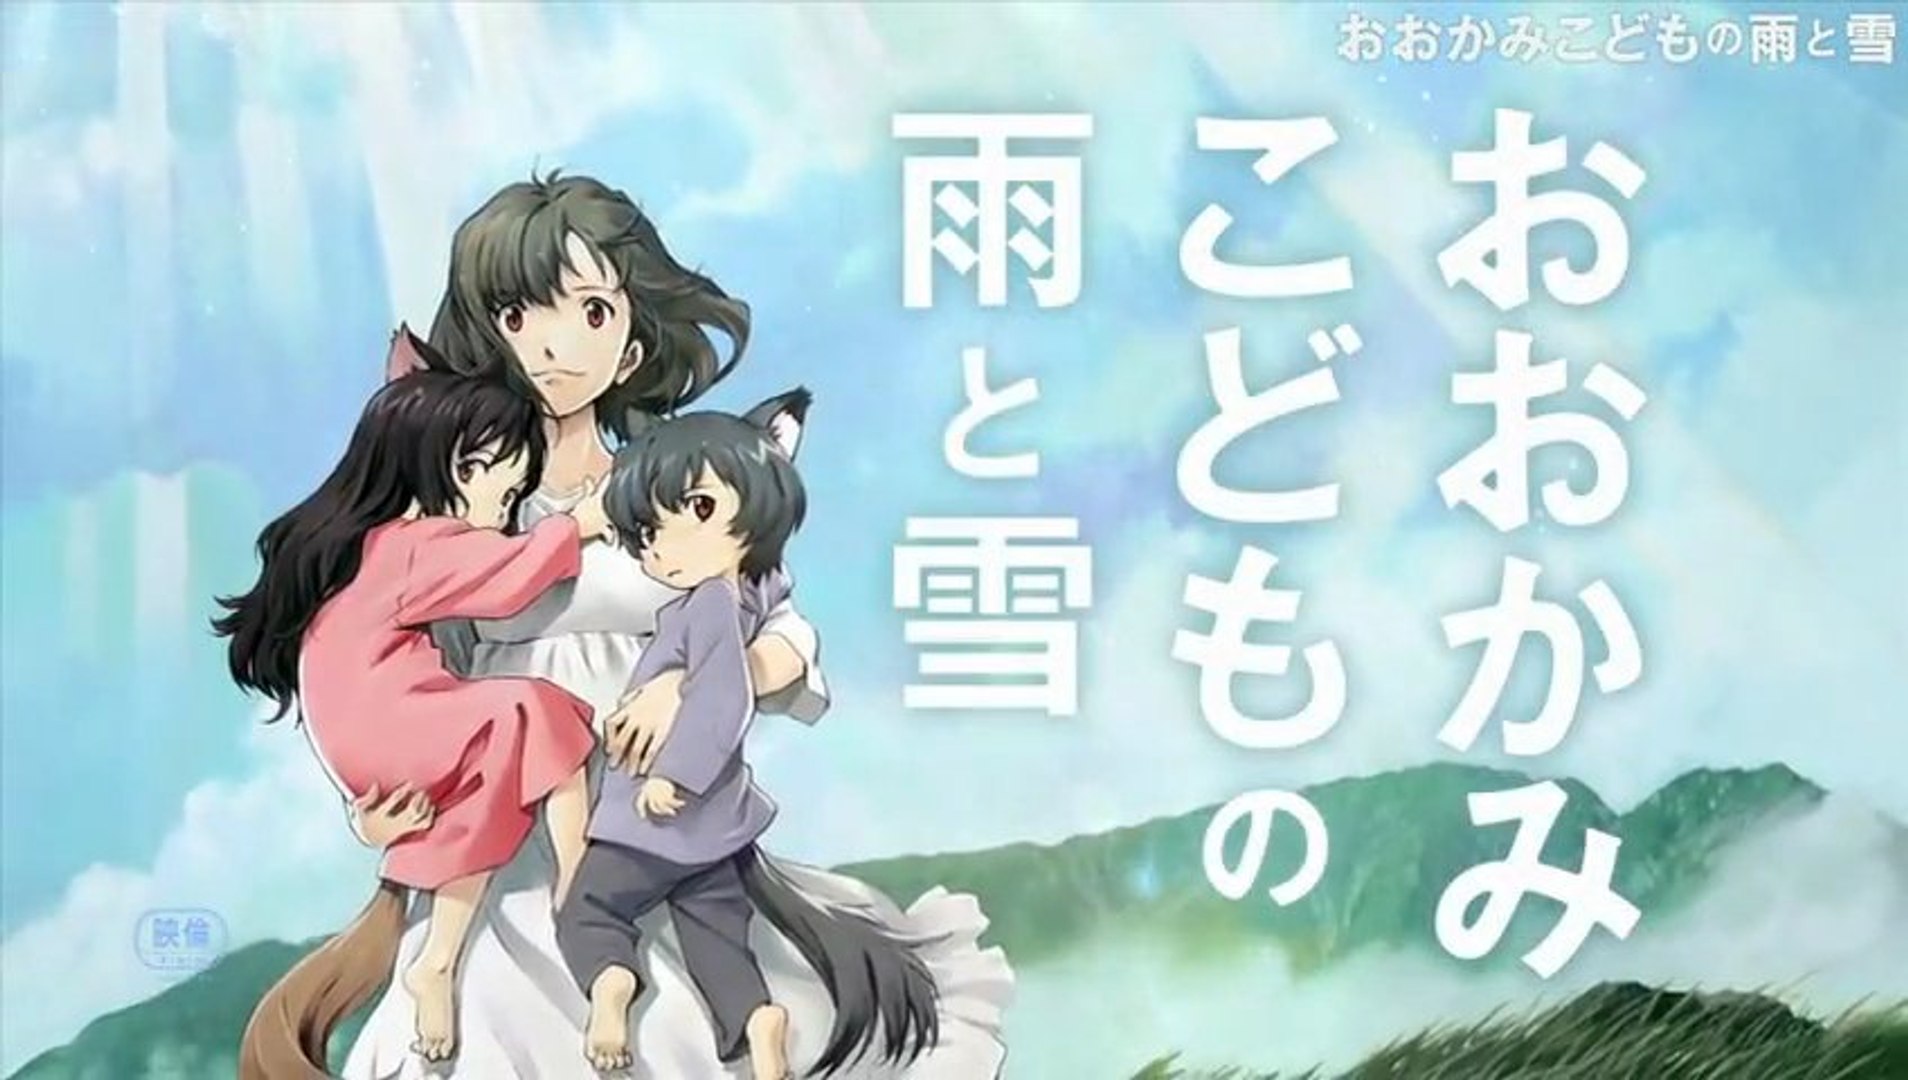 おおかみこどもの雨と雪 Wolf Children 12 Jpn Trailer Mamoru Hosoda 細田守 動画 Dailymotion